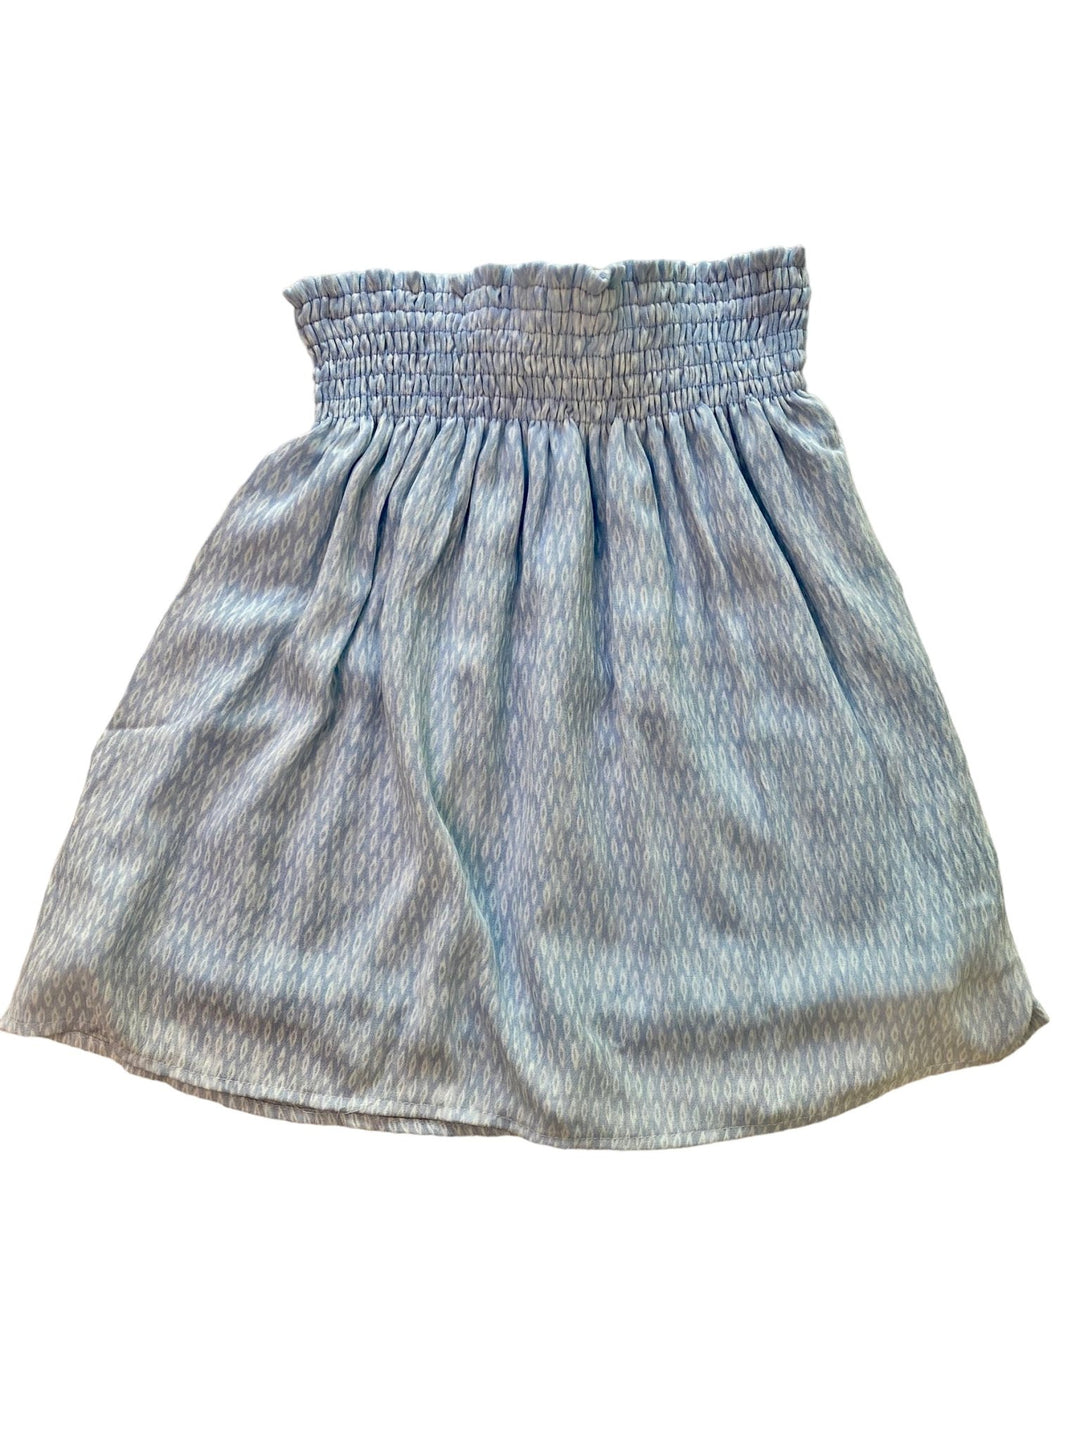 Blue Floral Mini Skirt - jernijacks